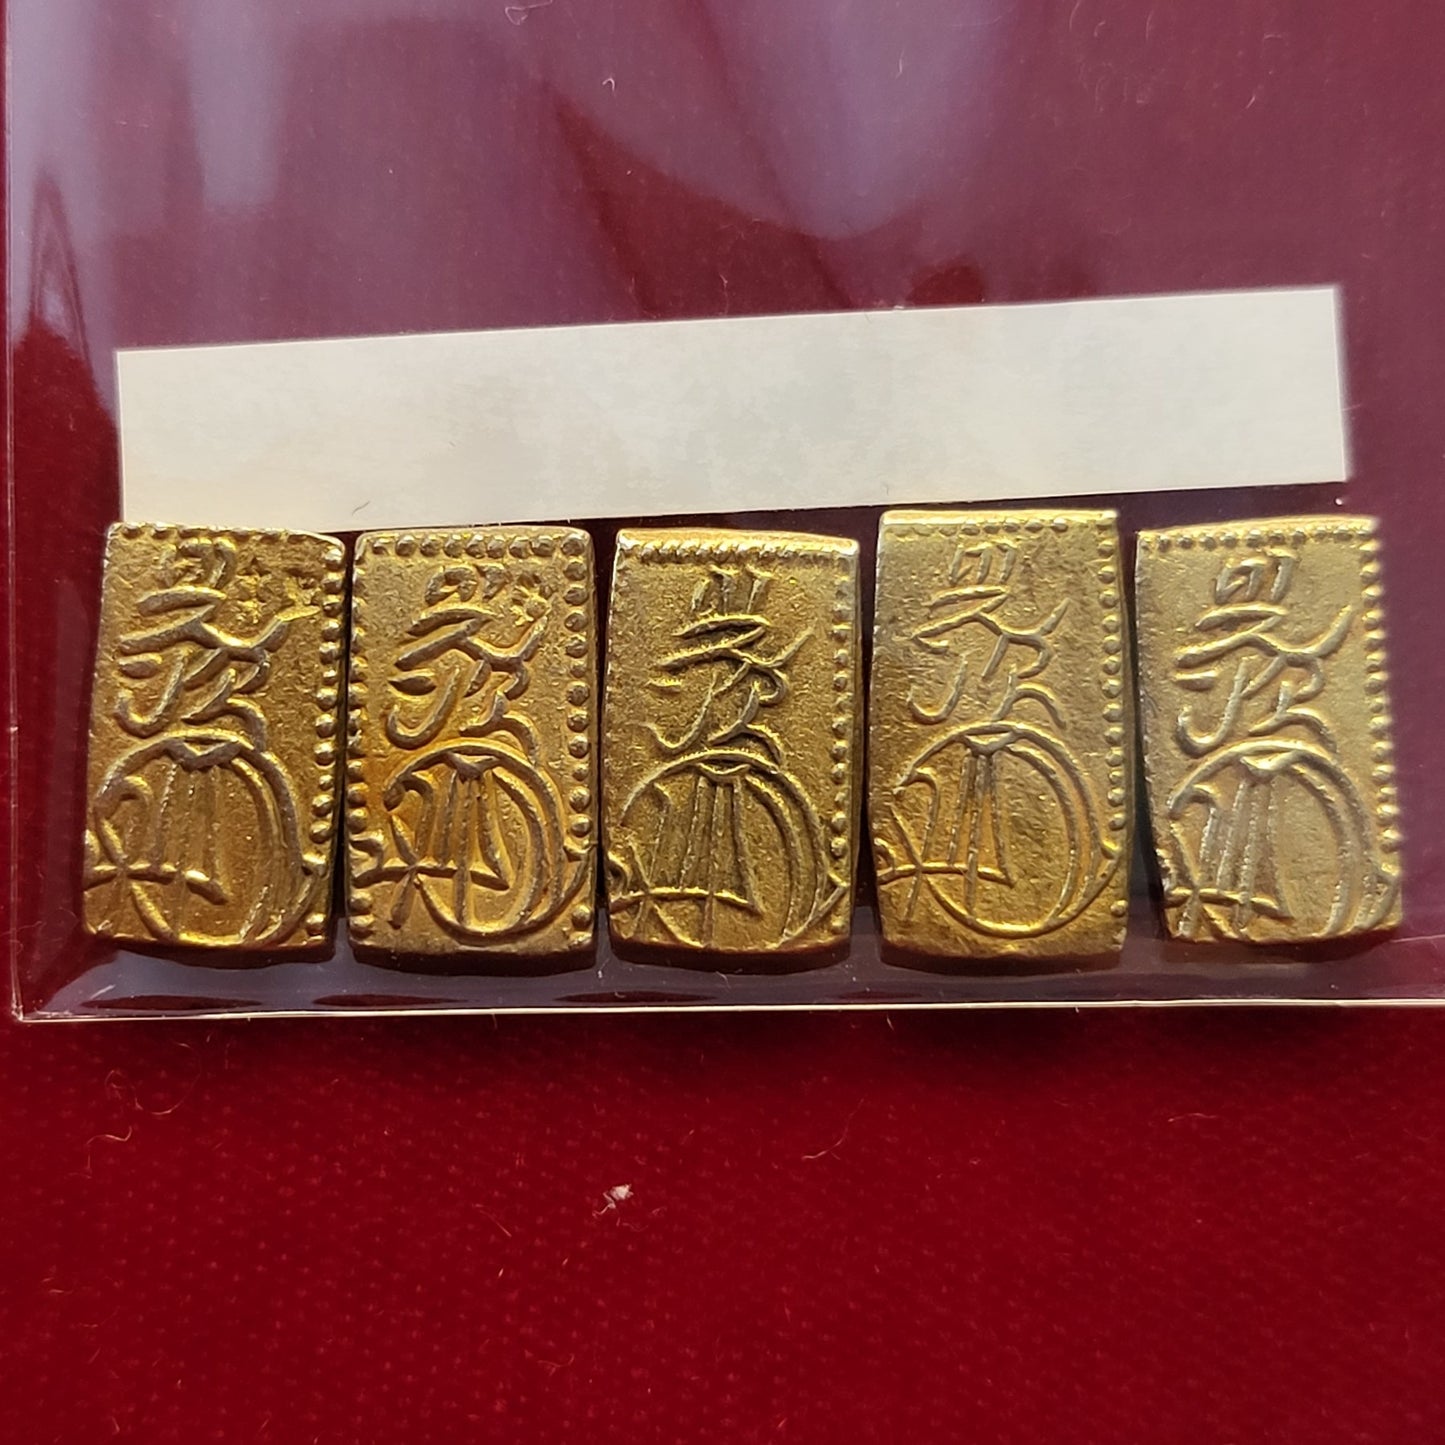 Tenpo 2 Shu Gold AU grade 5 Pack 